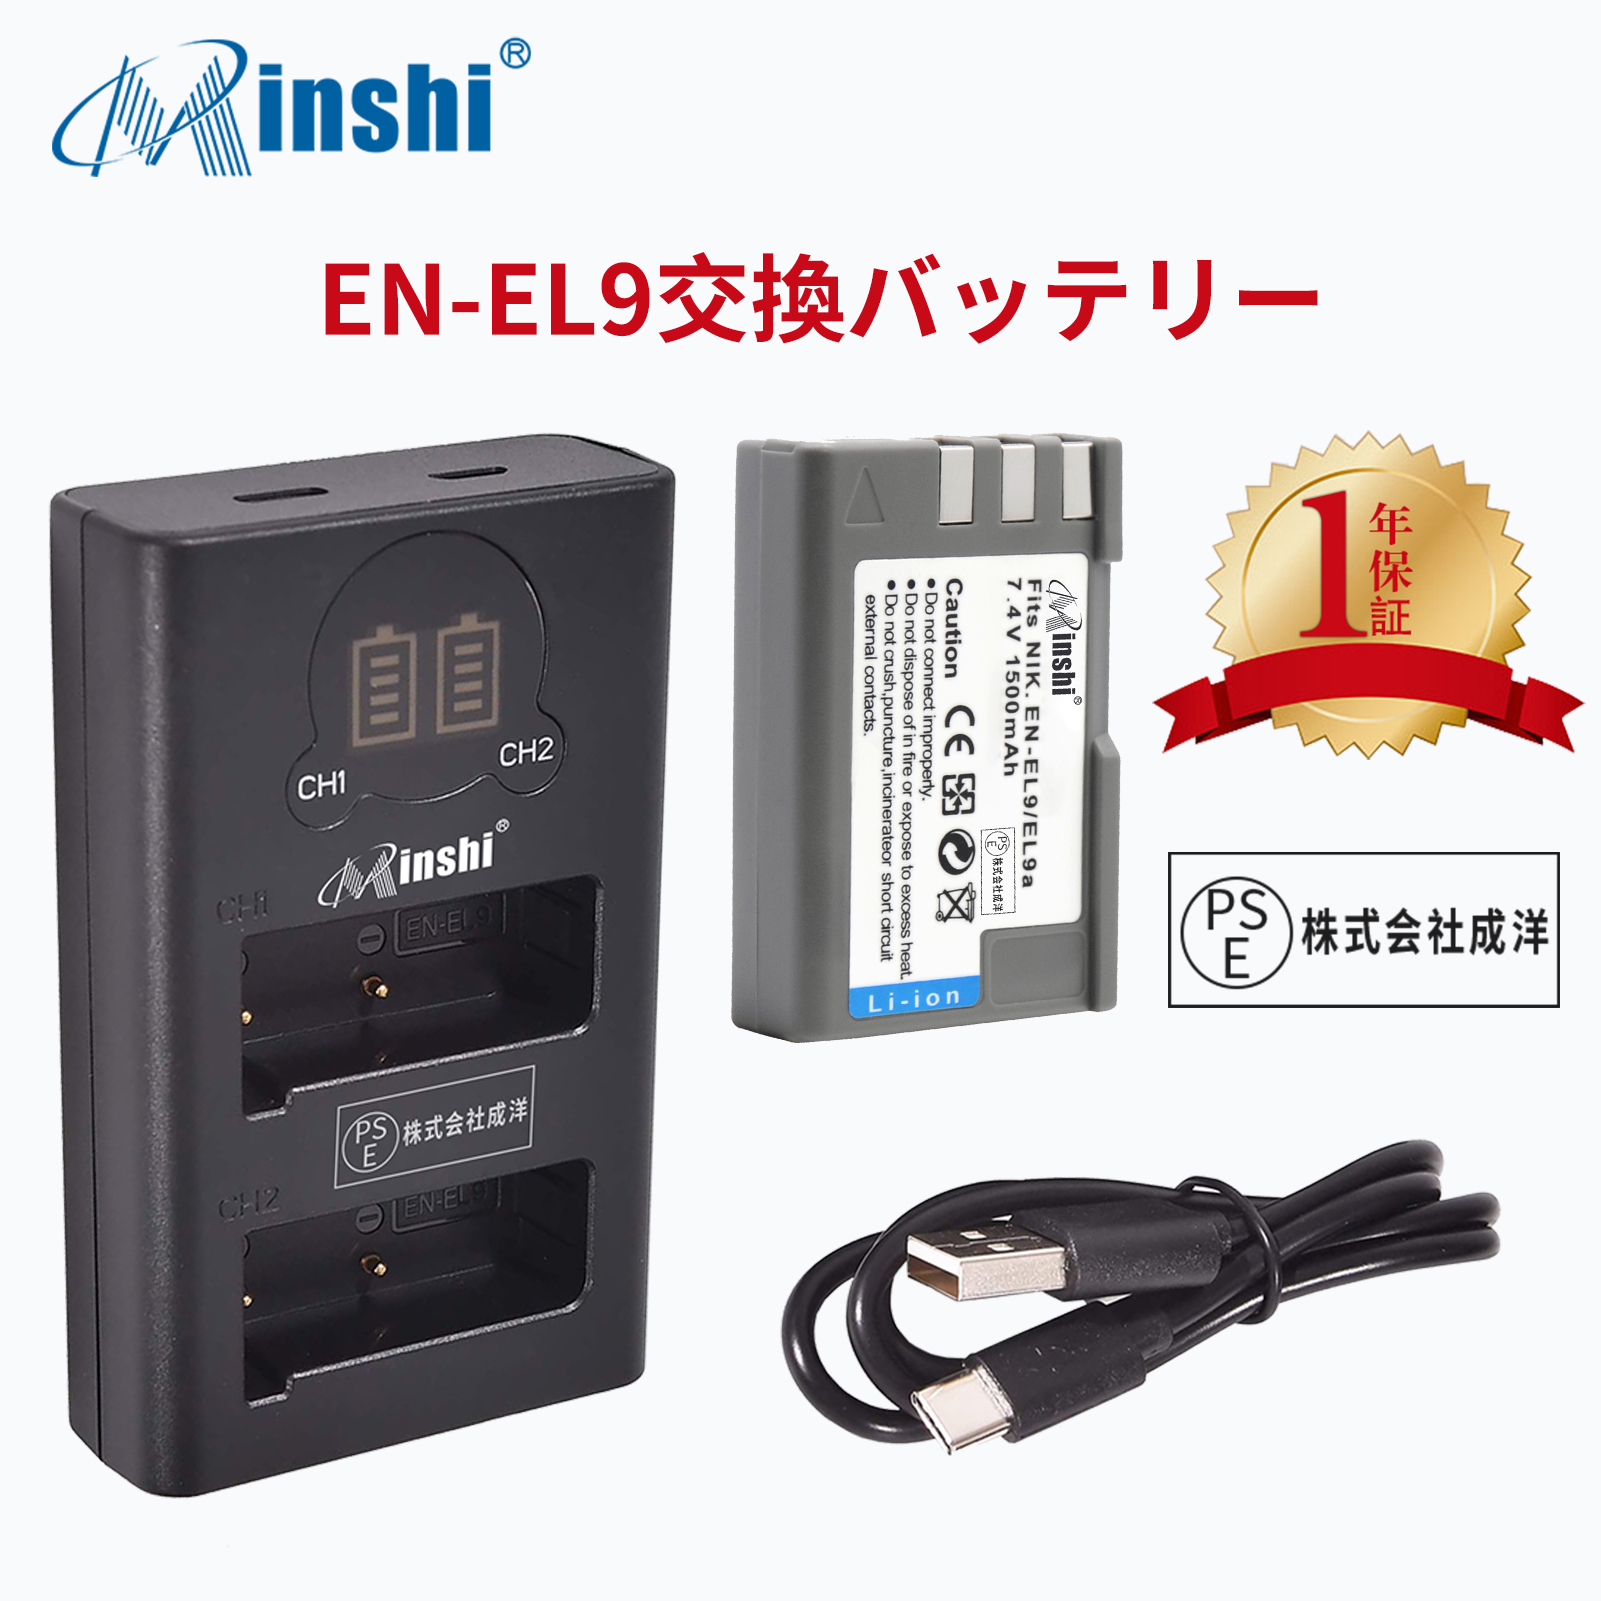 【1年保証】minshi NIKON EN-EL9a【1500mAh 7.4V】 【互換急速USBチャージャー】PSE認定済 高品質EN-EL9 EN-EL9a EN-EL9e互換バッテリーPHB